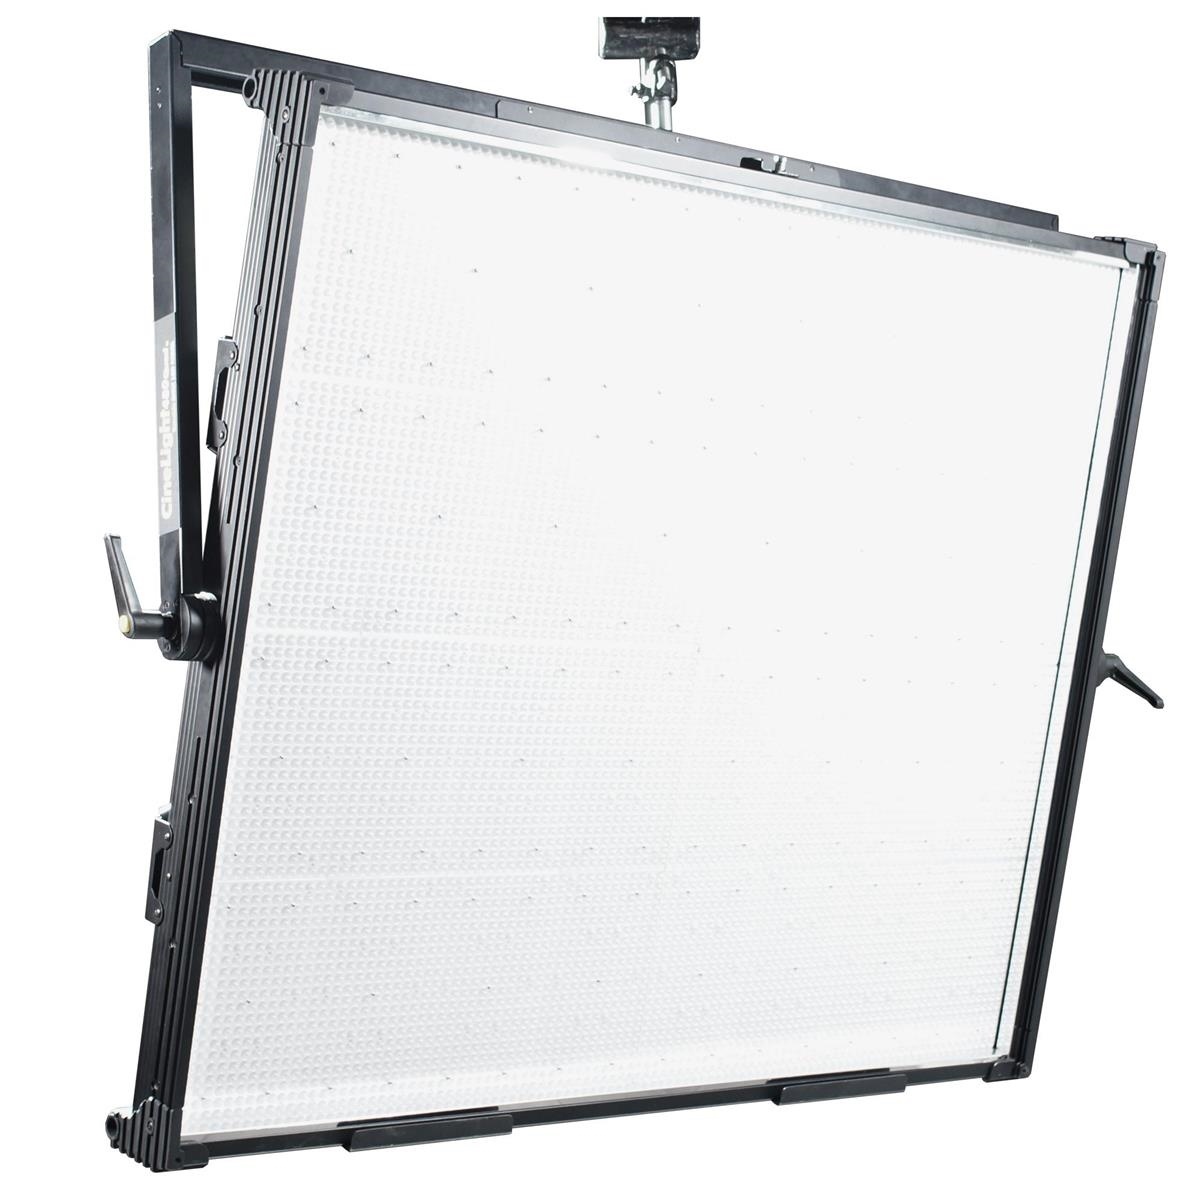 Fluotec CineLight 480 Super Quad Interchangeable Diffusion 1.2m LED Panel